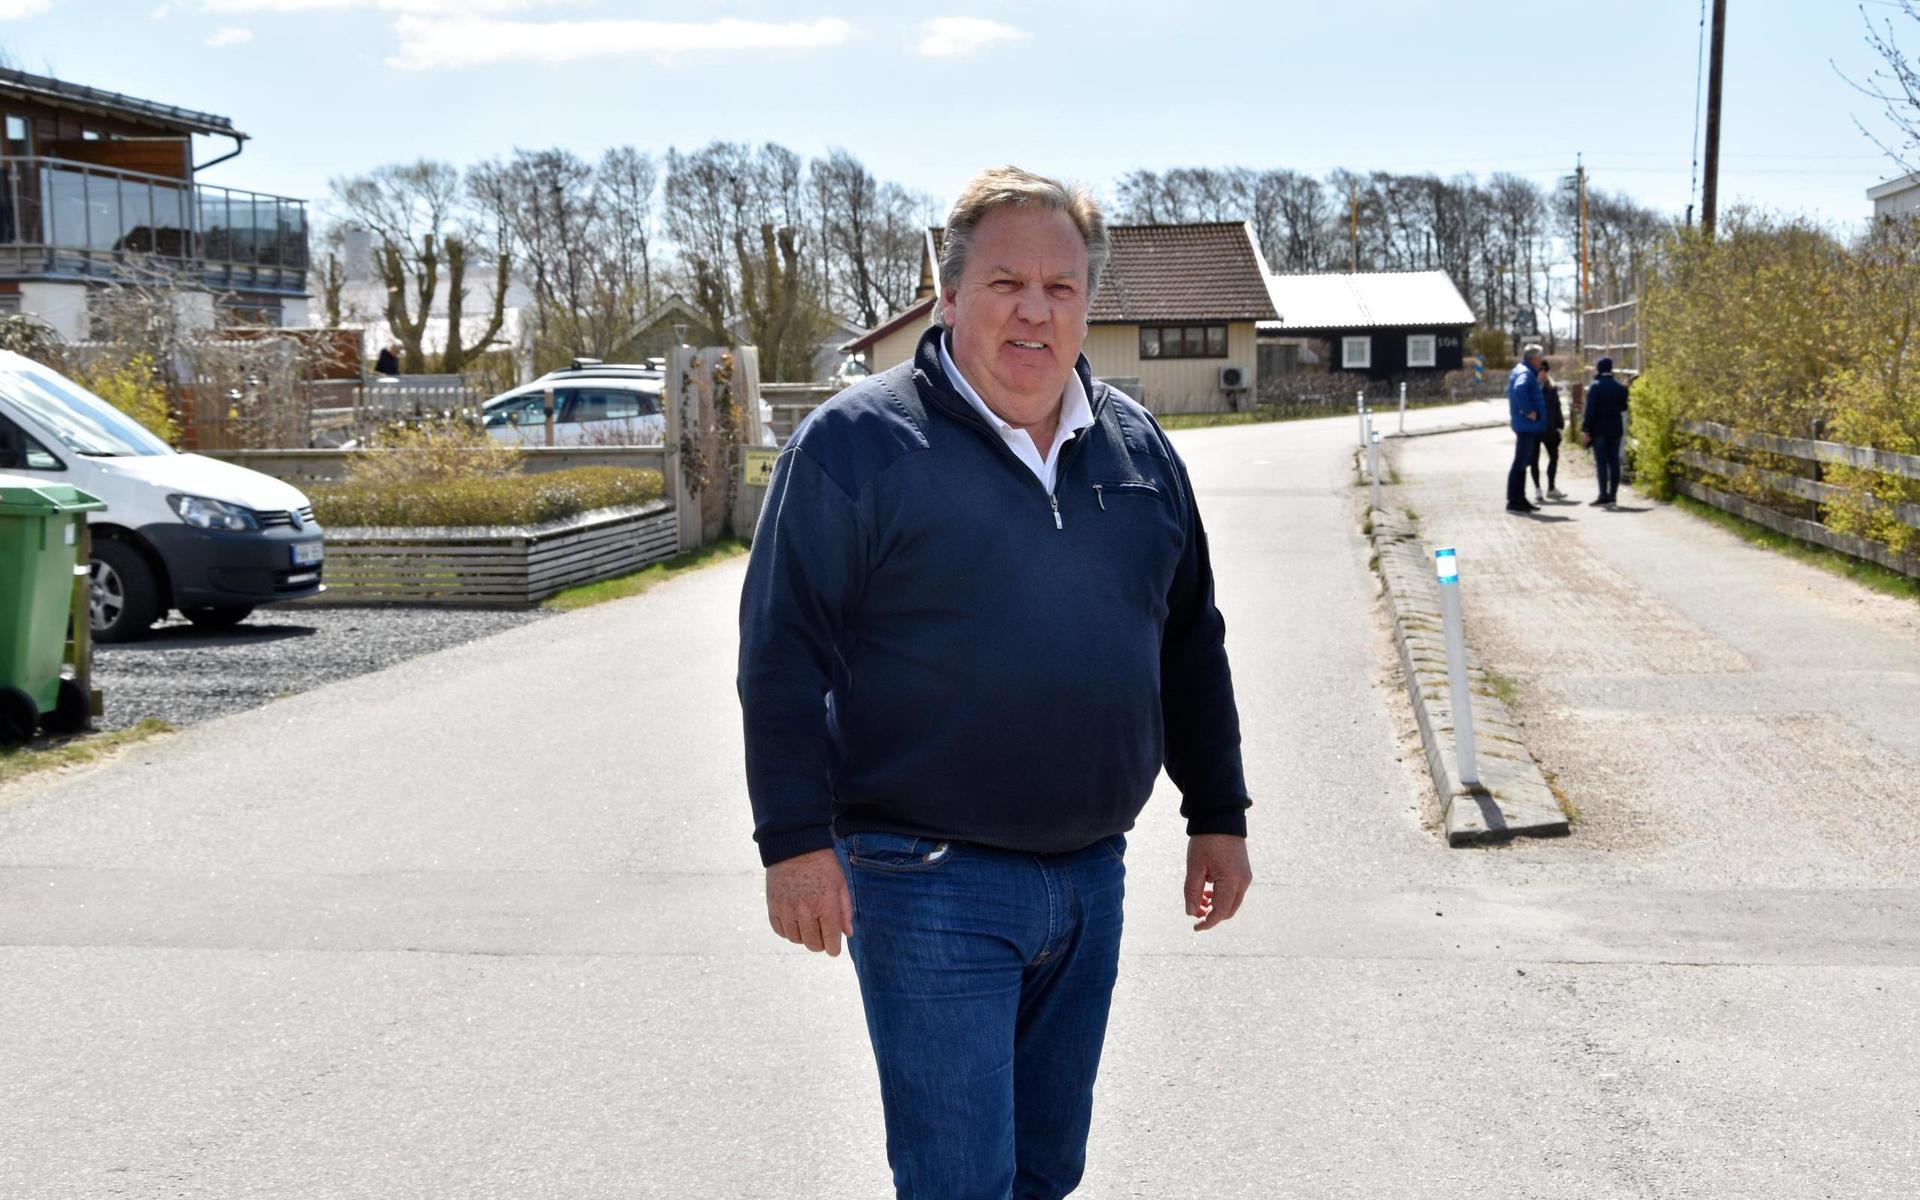 Uhlf Skoglund är ordförande för Apelvikens Stugägarförening med omkring 780 medlemsstugor. De tänker inte acceptera kommunens förslag om att stänga av Tångaköravägen i juni.